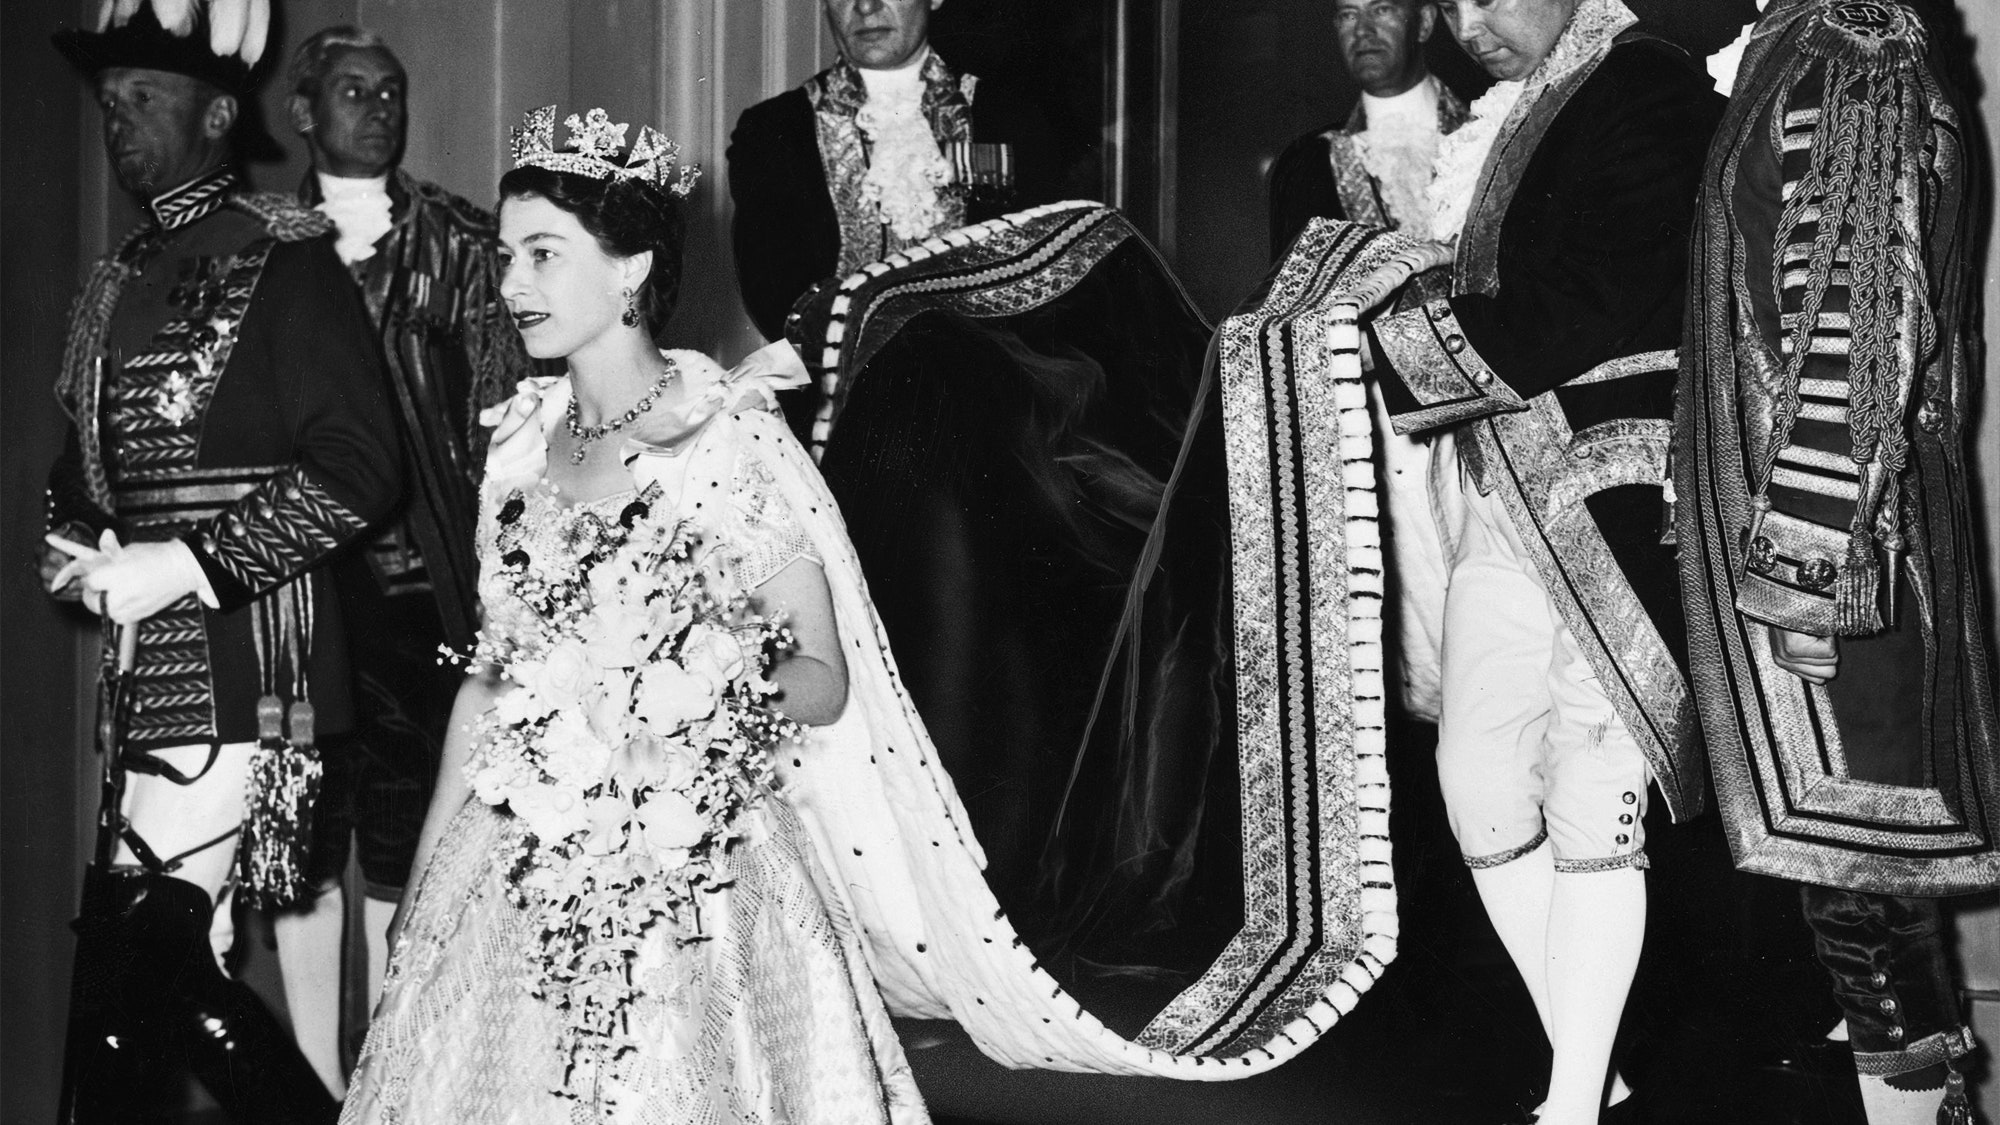 Photos: A Look Back at Queen Elizabeth II's Coronation